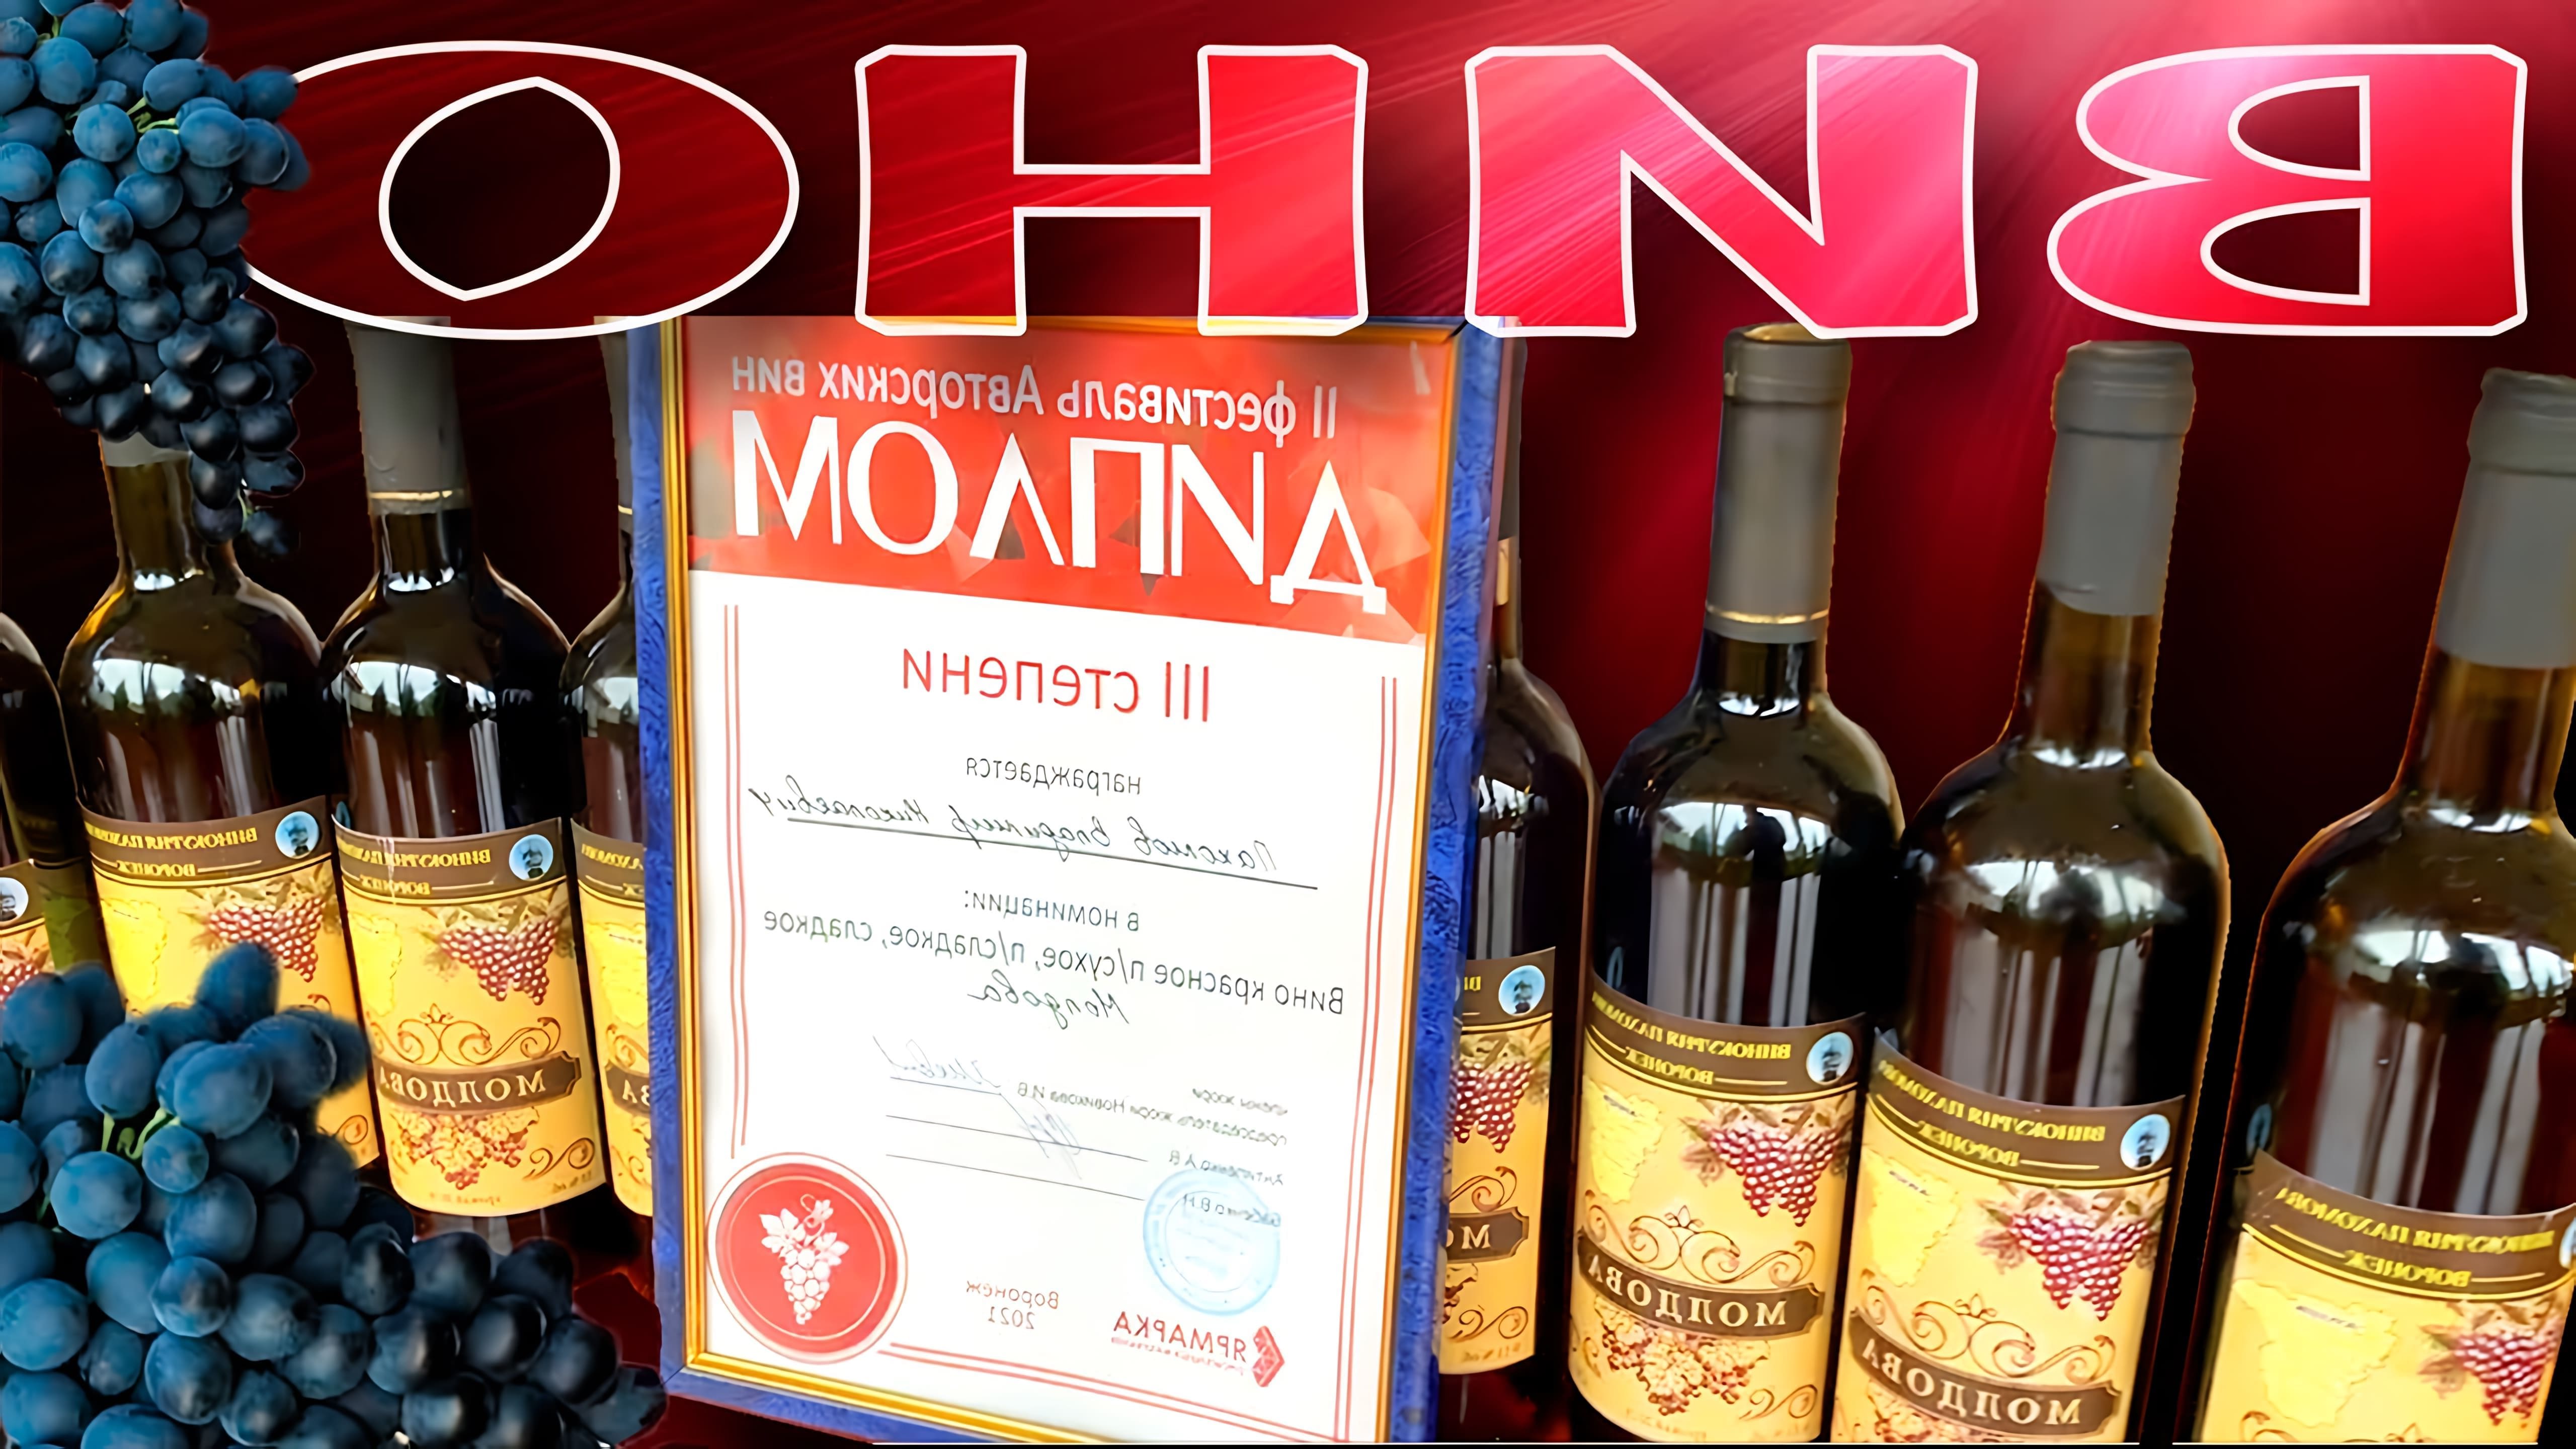 В этом видео демонстрируется процесс приготовления домашнего виноградного вина из винограда сорта Изабелла и Молдова